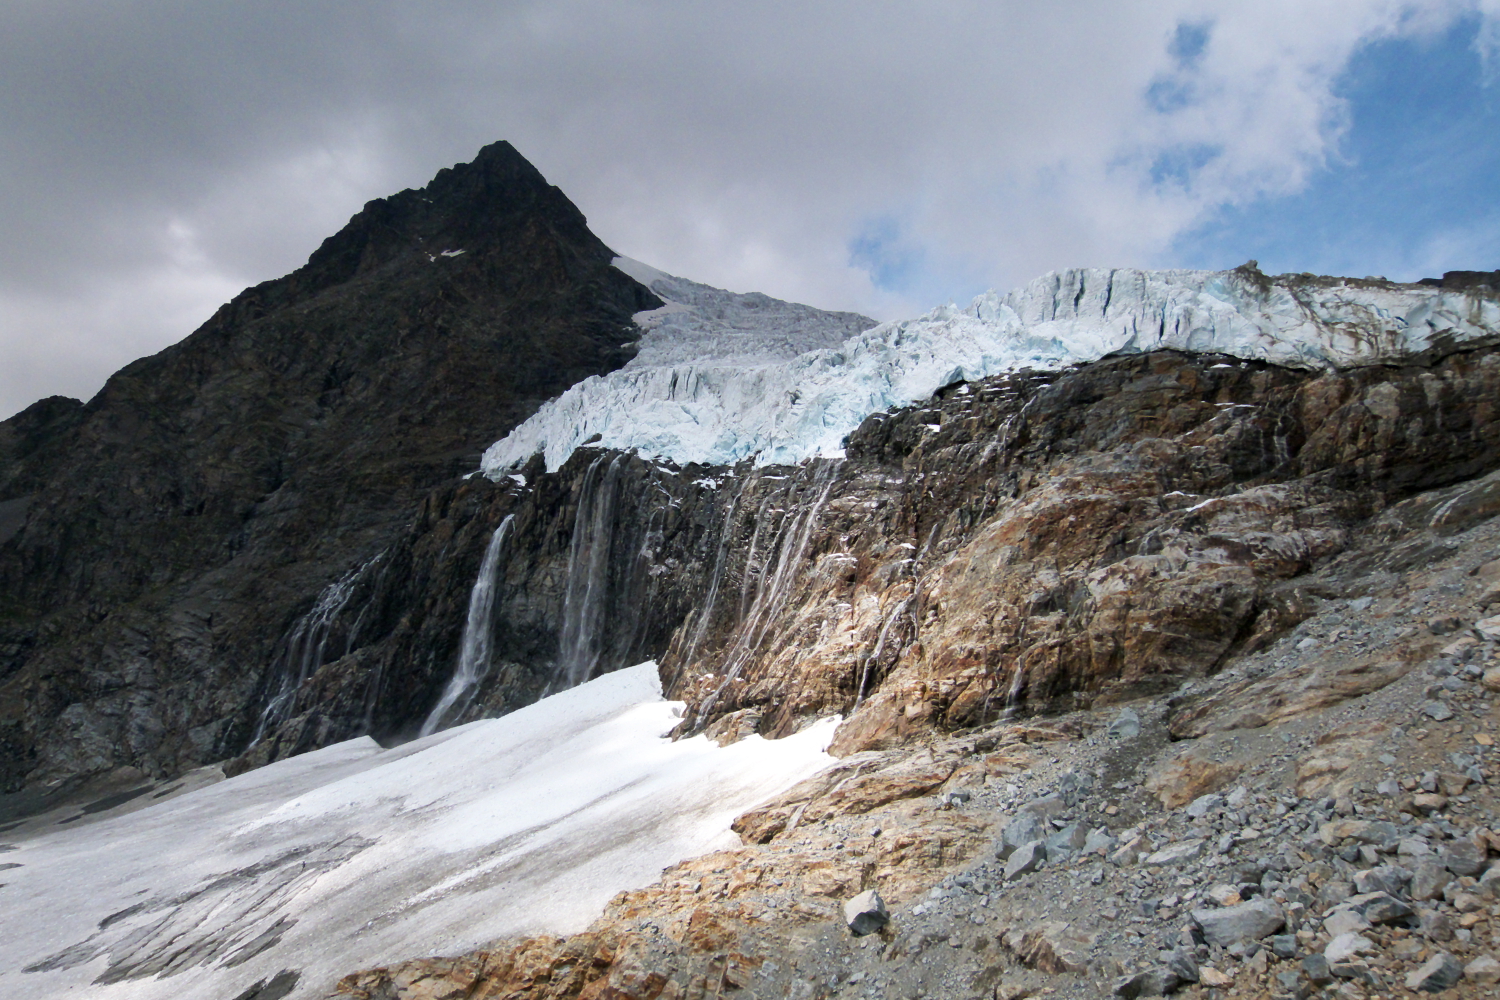 Fellaria Glacier